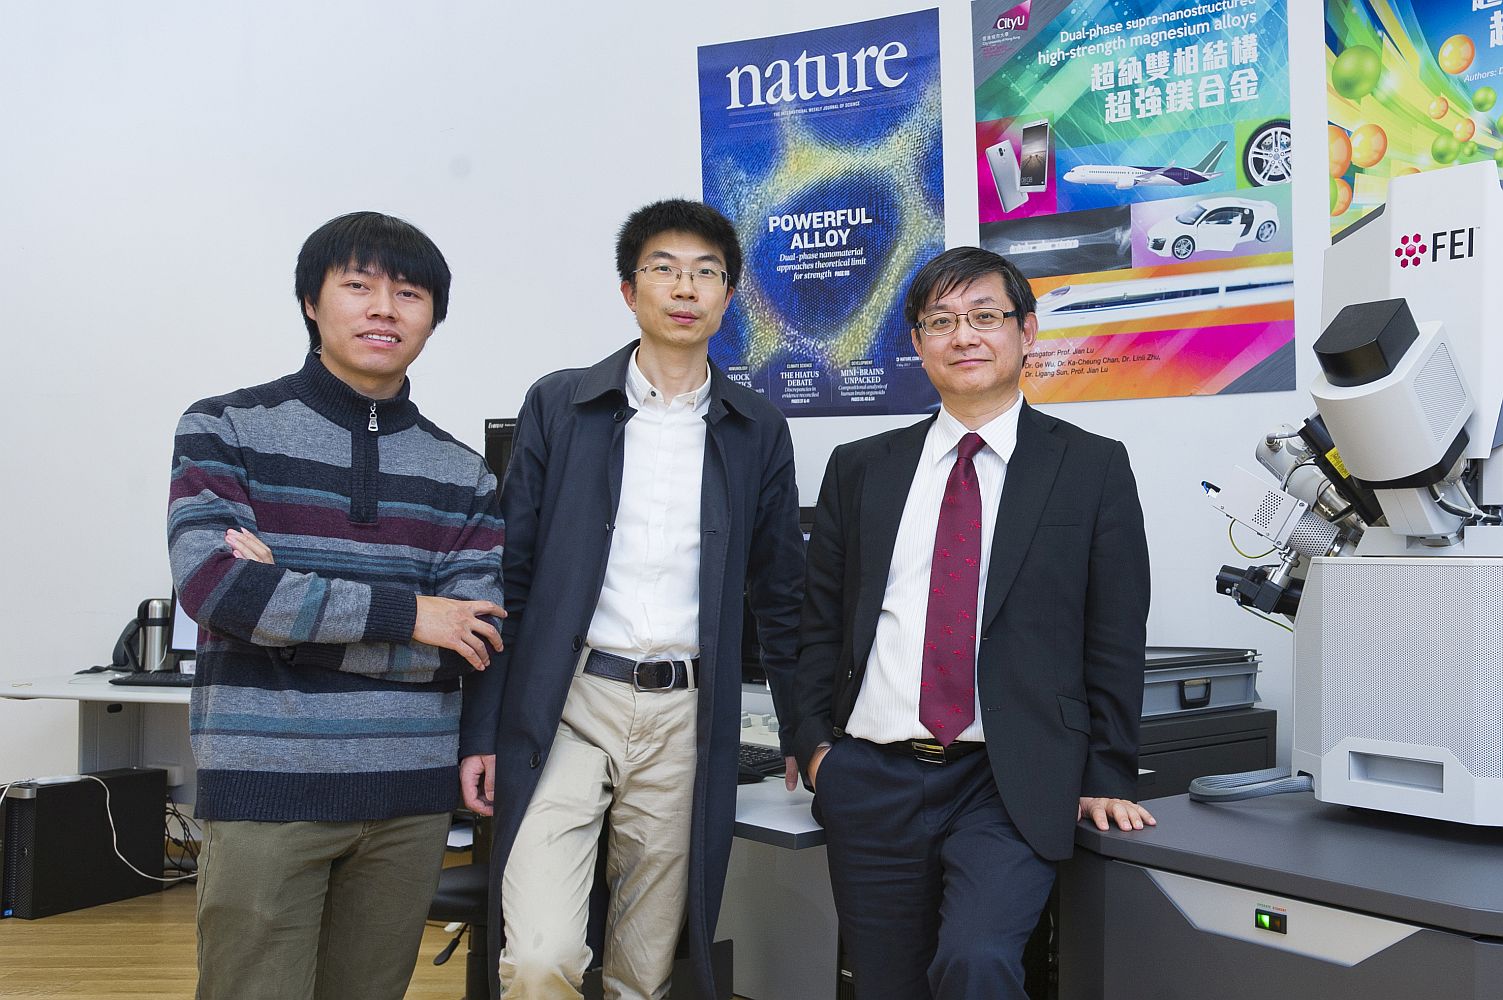 （左起）孙李刚博士、吴戈博士及吕坚教授。他们上一个重大研究成果，超纳镁合金双相材料之前荣登《自然》的封面。